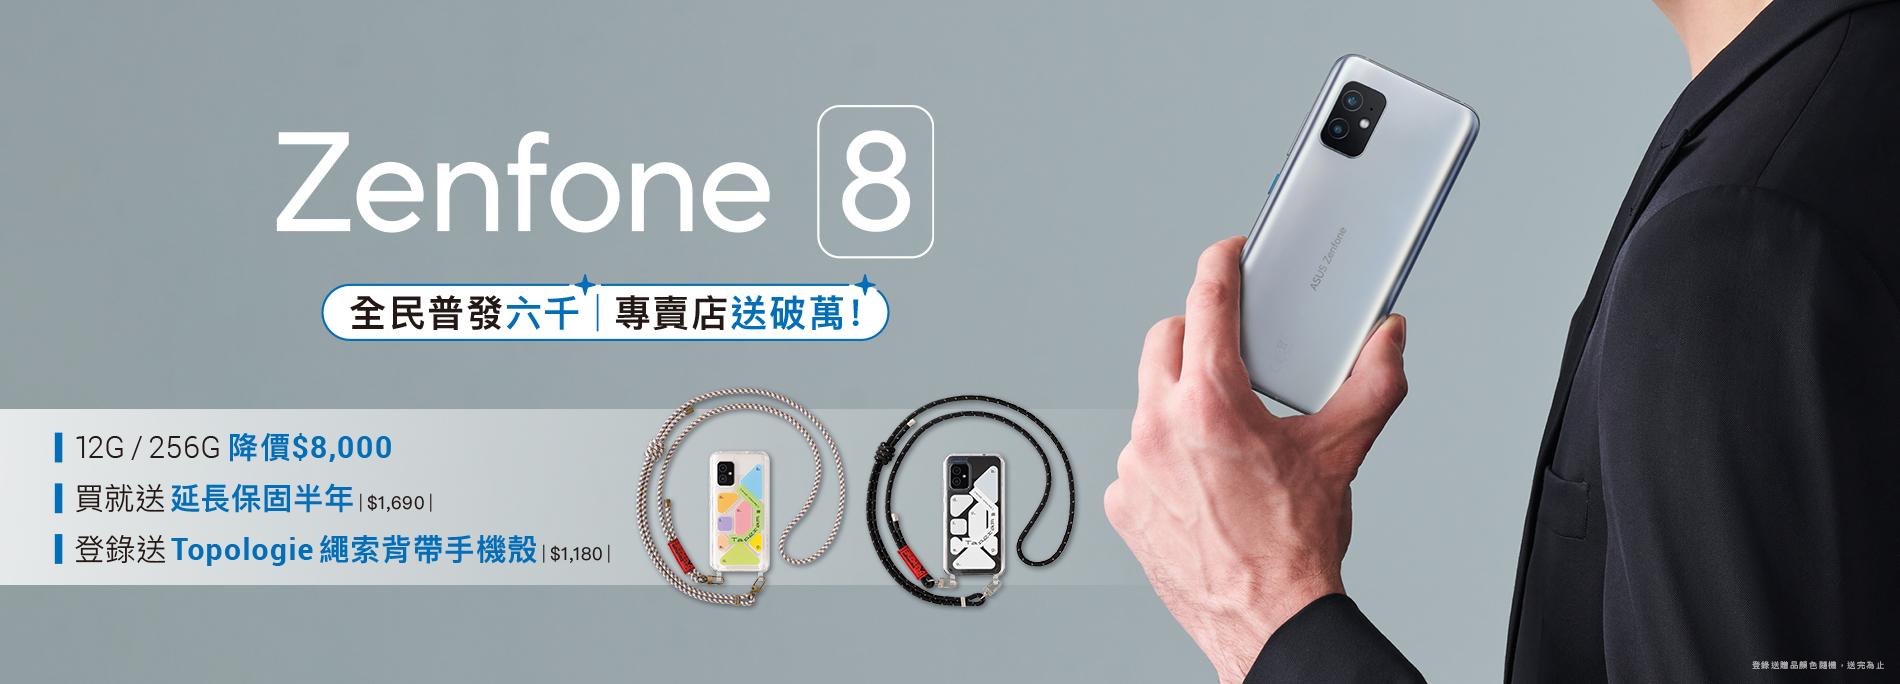 專賣店獨家！購買Zenfone 8登錄送Topologie繩索背帶手機殼